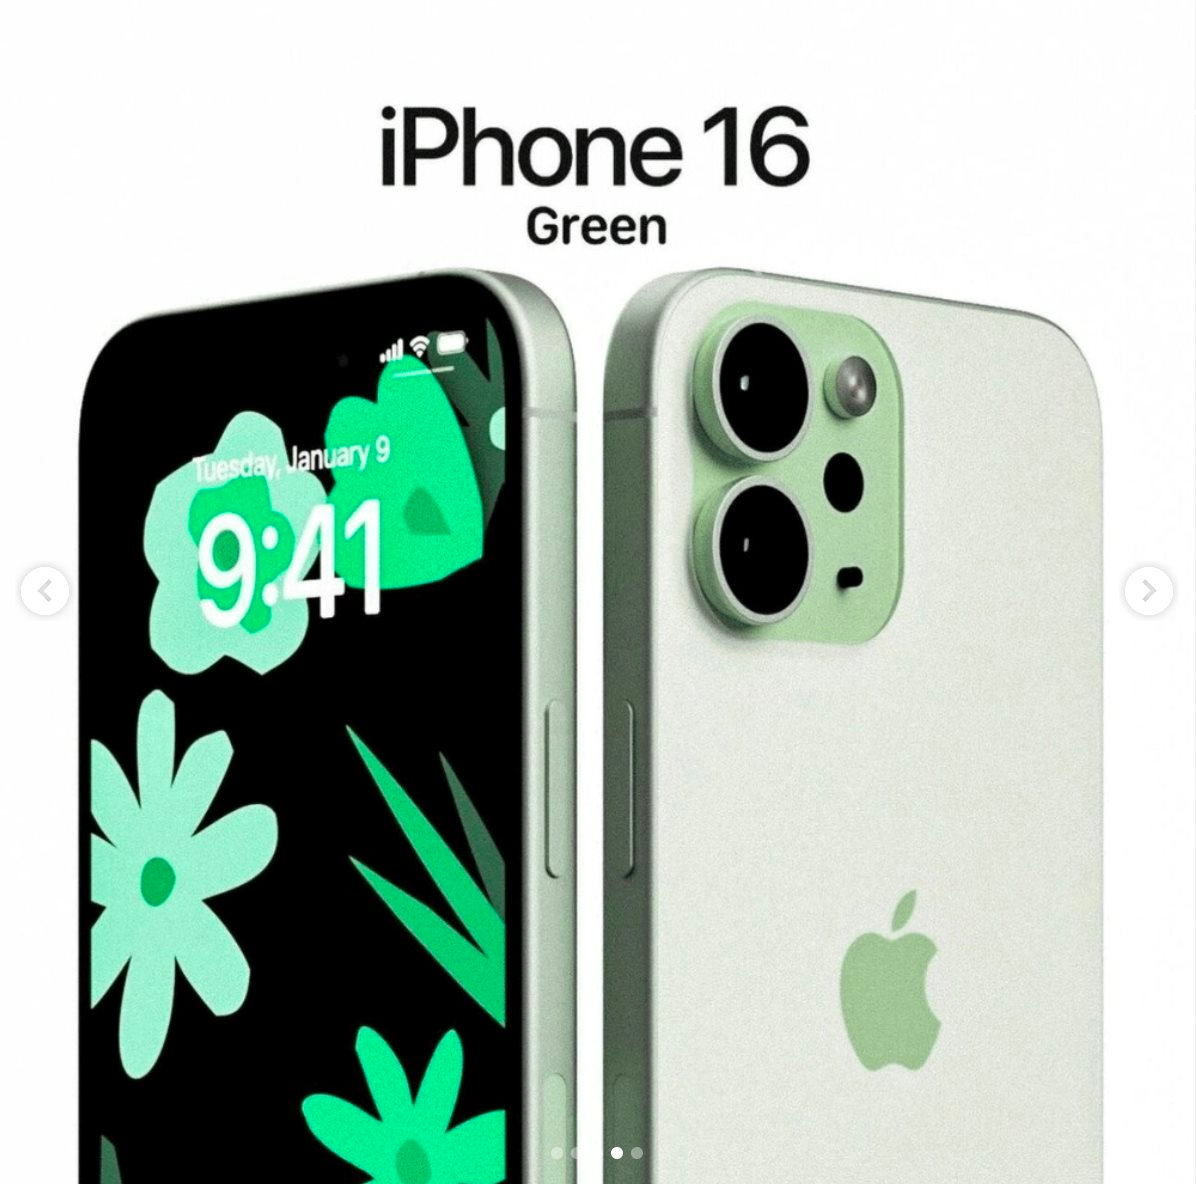 Ngắm iPhone 16 màu xanh lá cây - Ảnh 4.